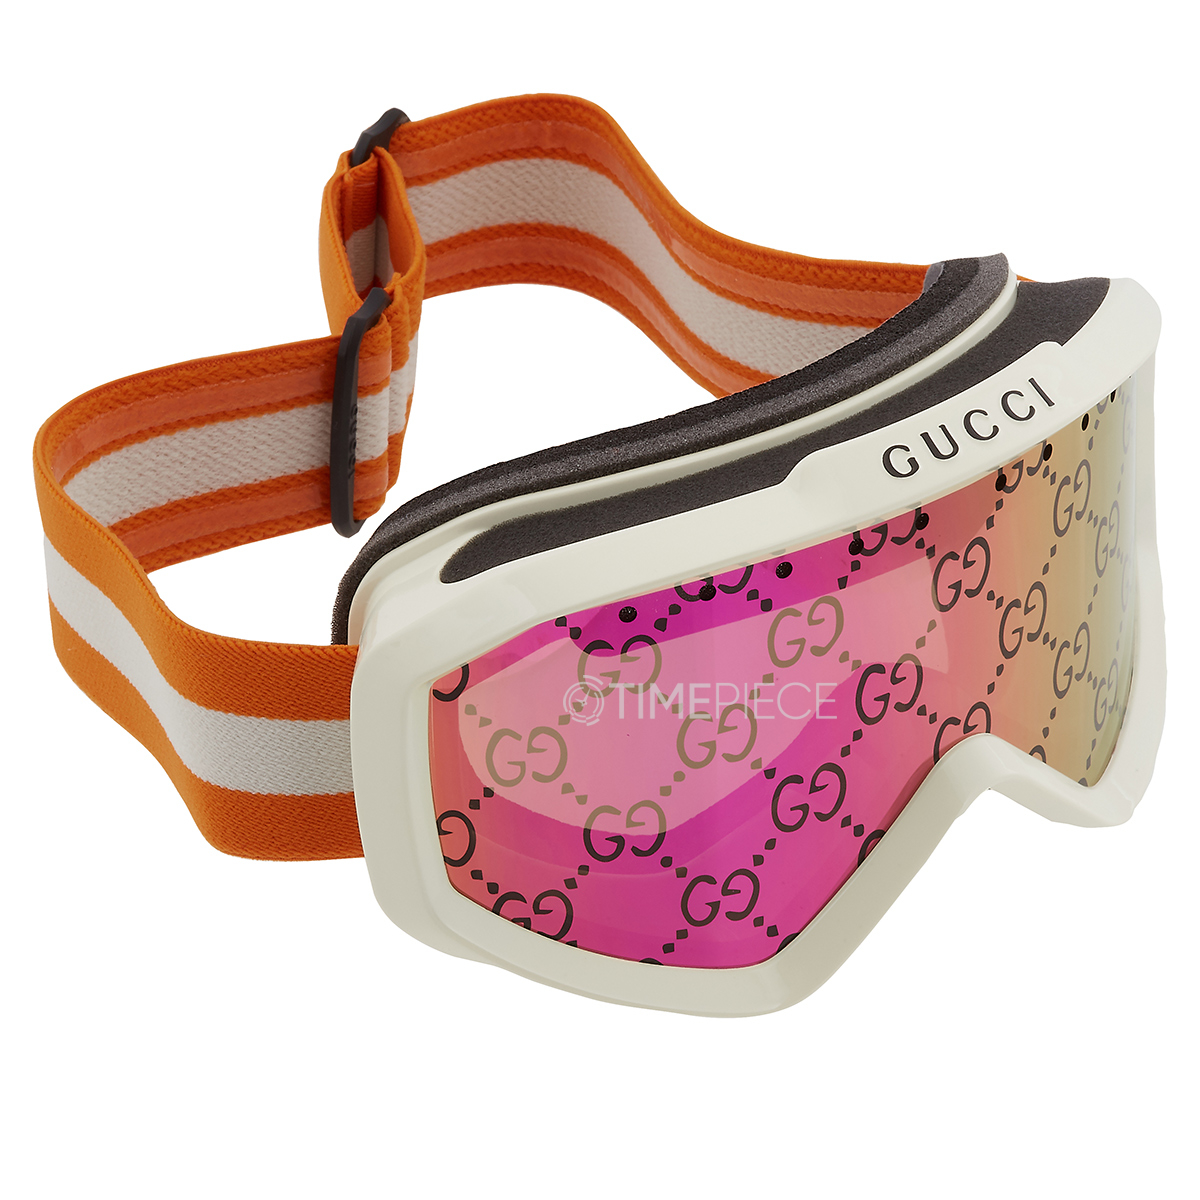 Gucci GG1210S Single Lens Sunglasses